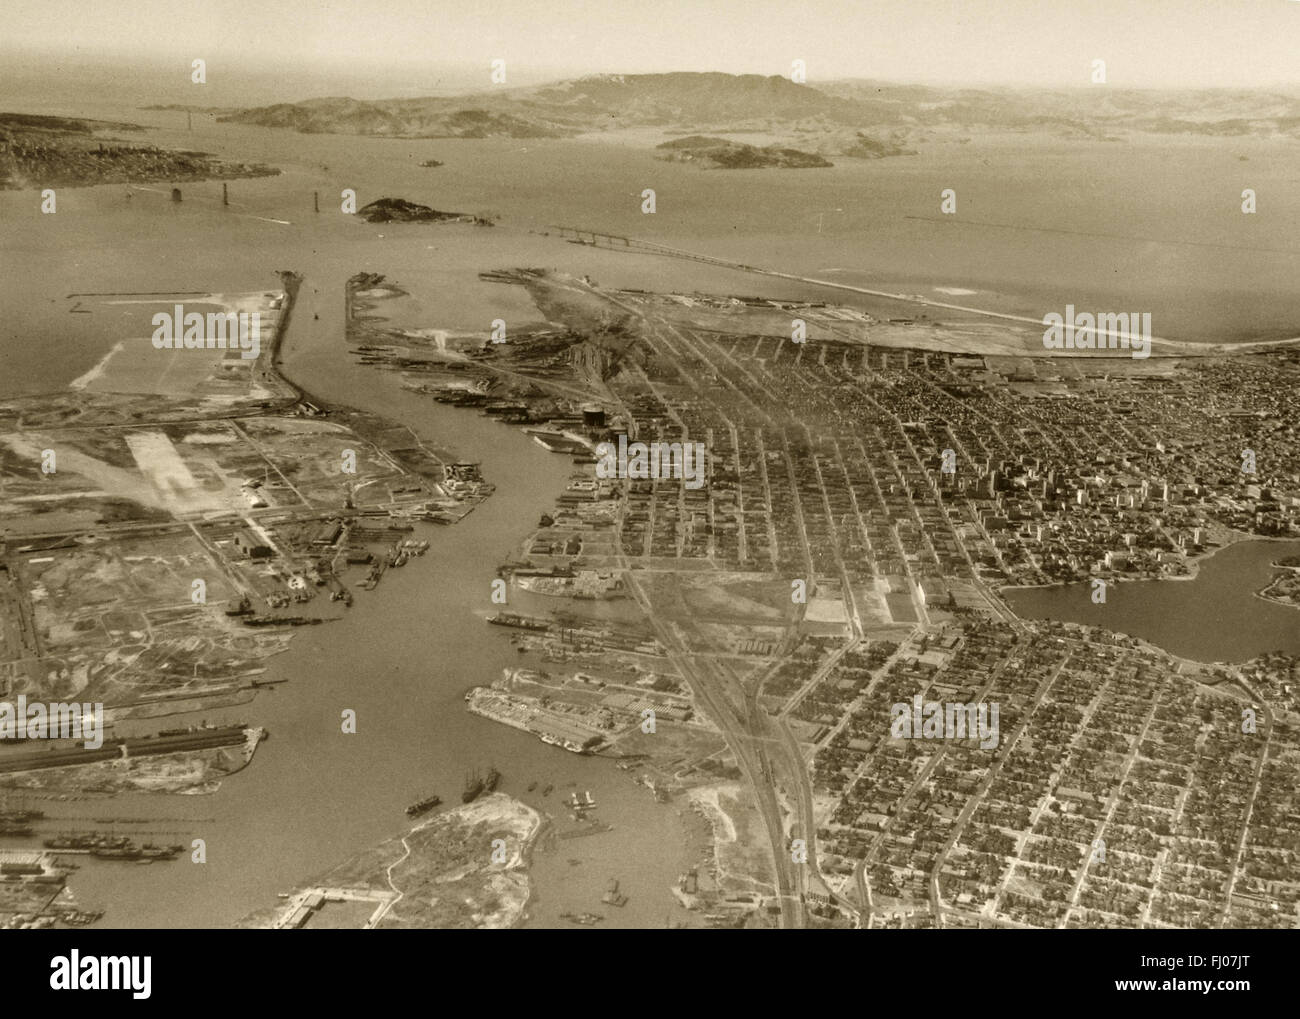 Fotografía aérea histórica de Oakland, Alameda, con puerto de Oakland Bay Bridge y el Golden Gate Bridge en construcción, California, 1935 Foto de stock